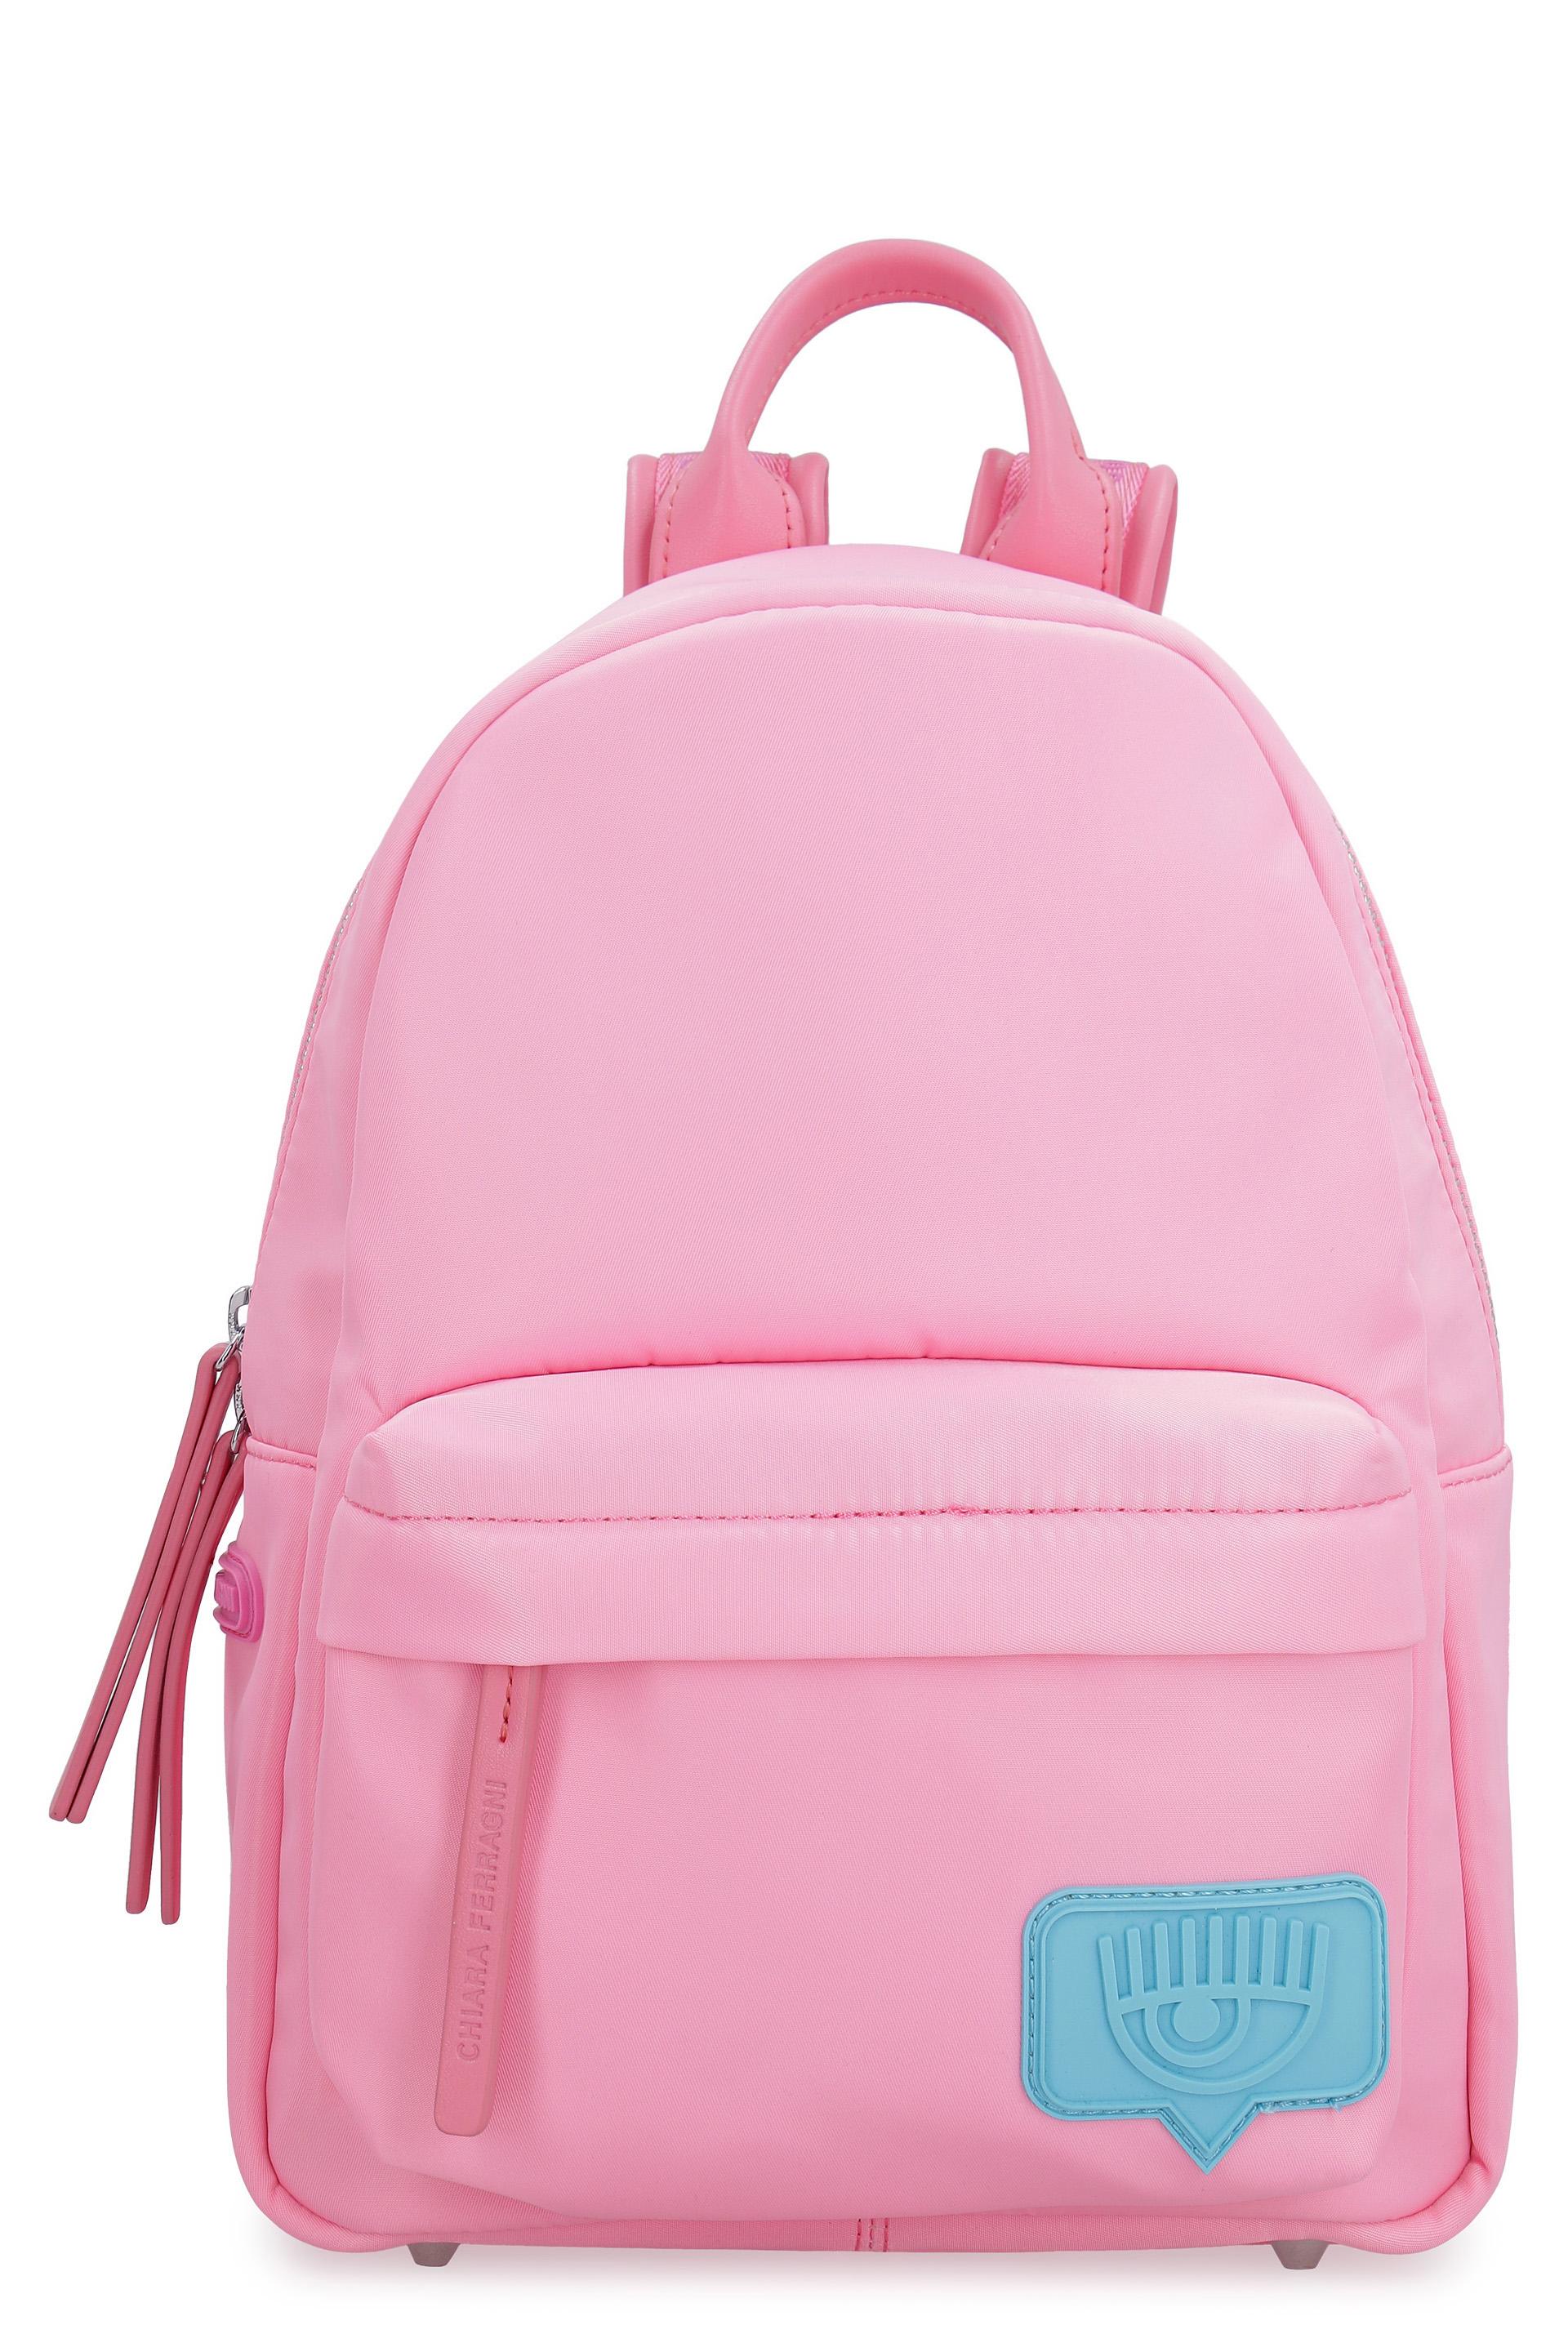 Chiara Ferragni Rubber Eyelike Small Backpack in Pink - Lyst